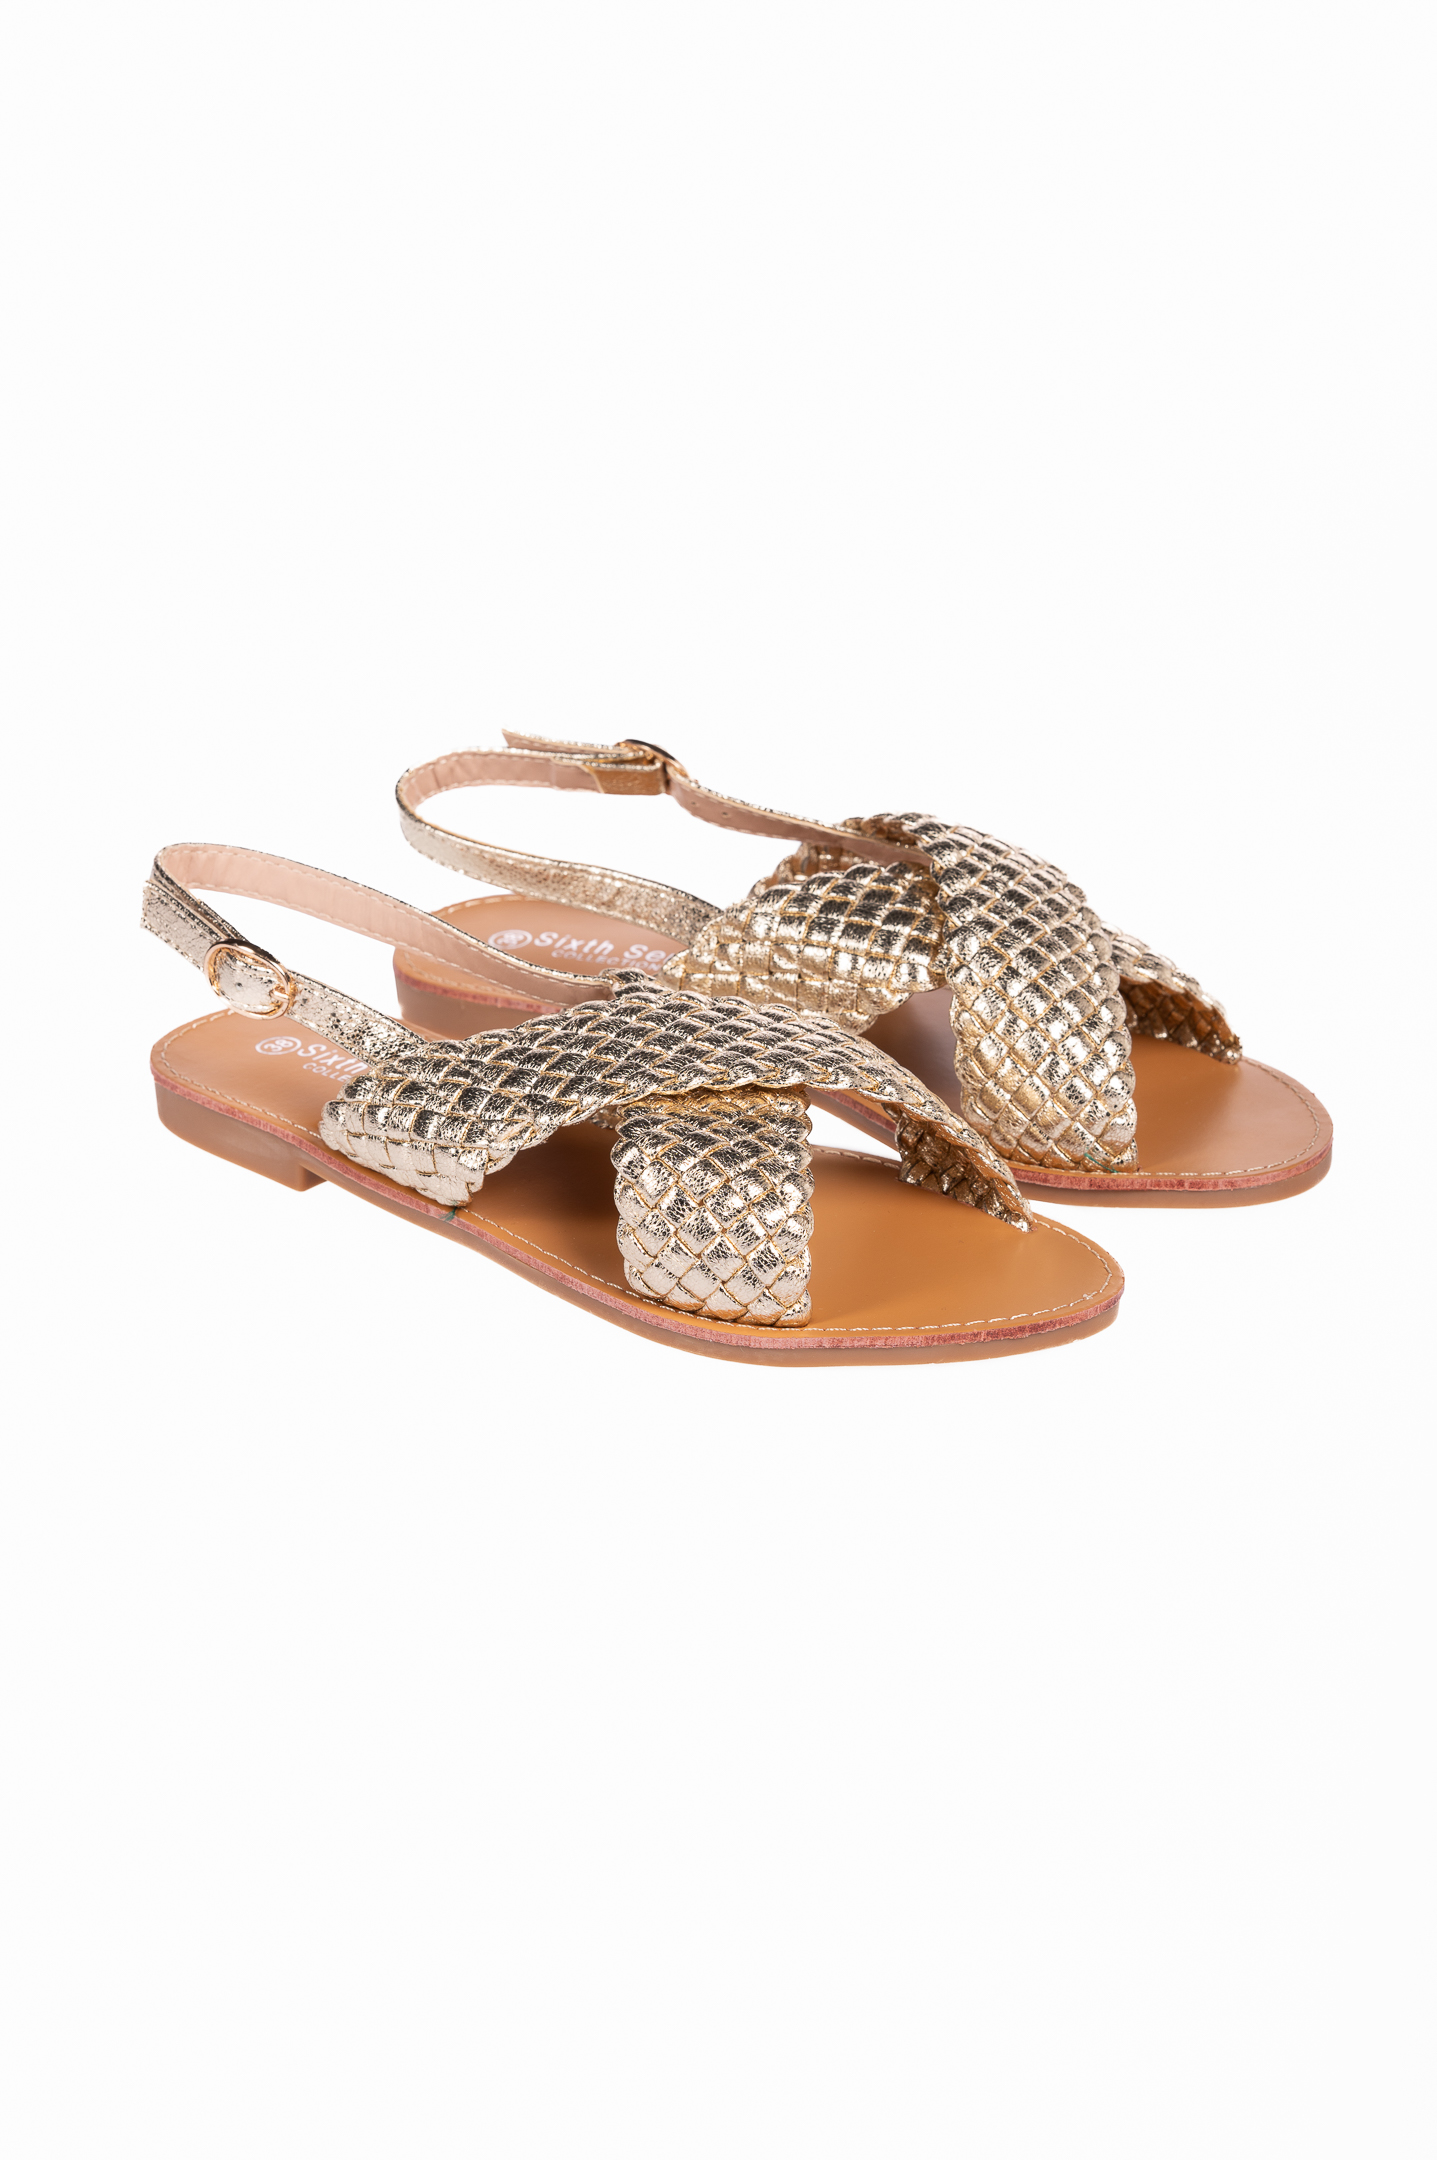 Παπούτσια > Σανδάλια Flat σανδάλια με πλεκτό σχέδιο - Χρυσό